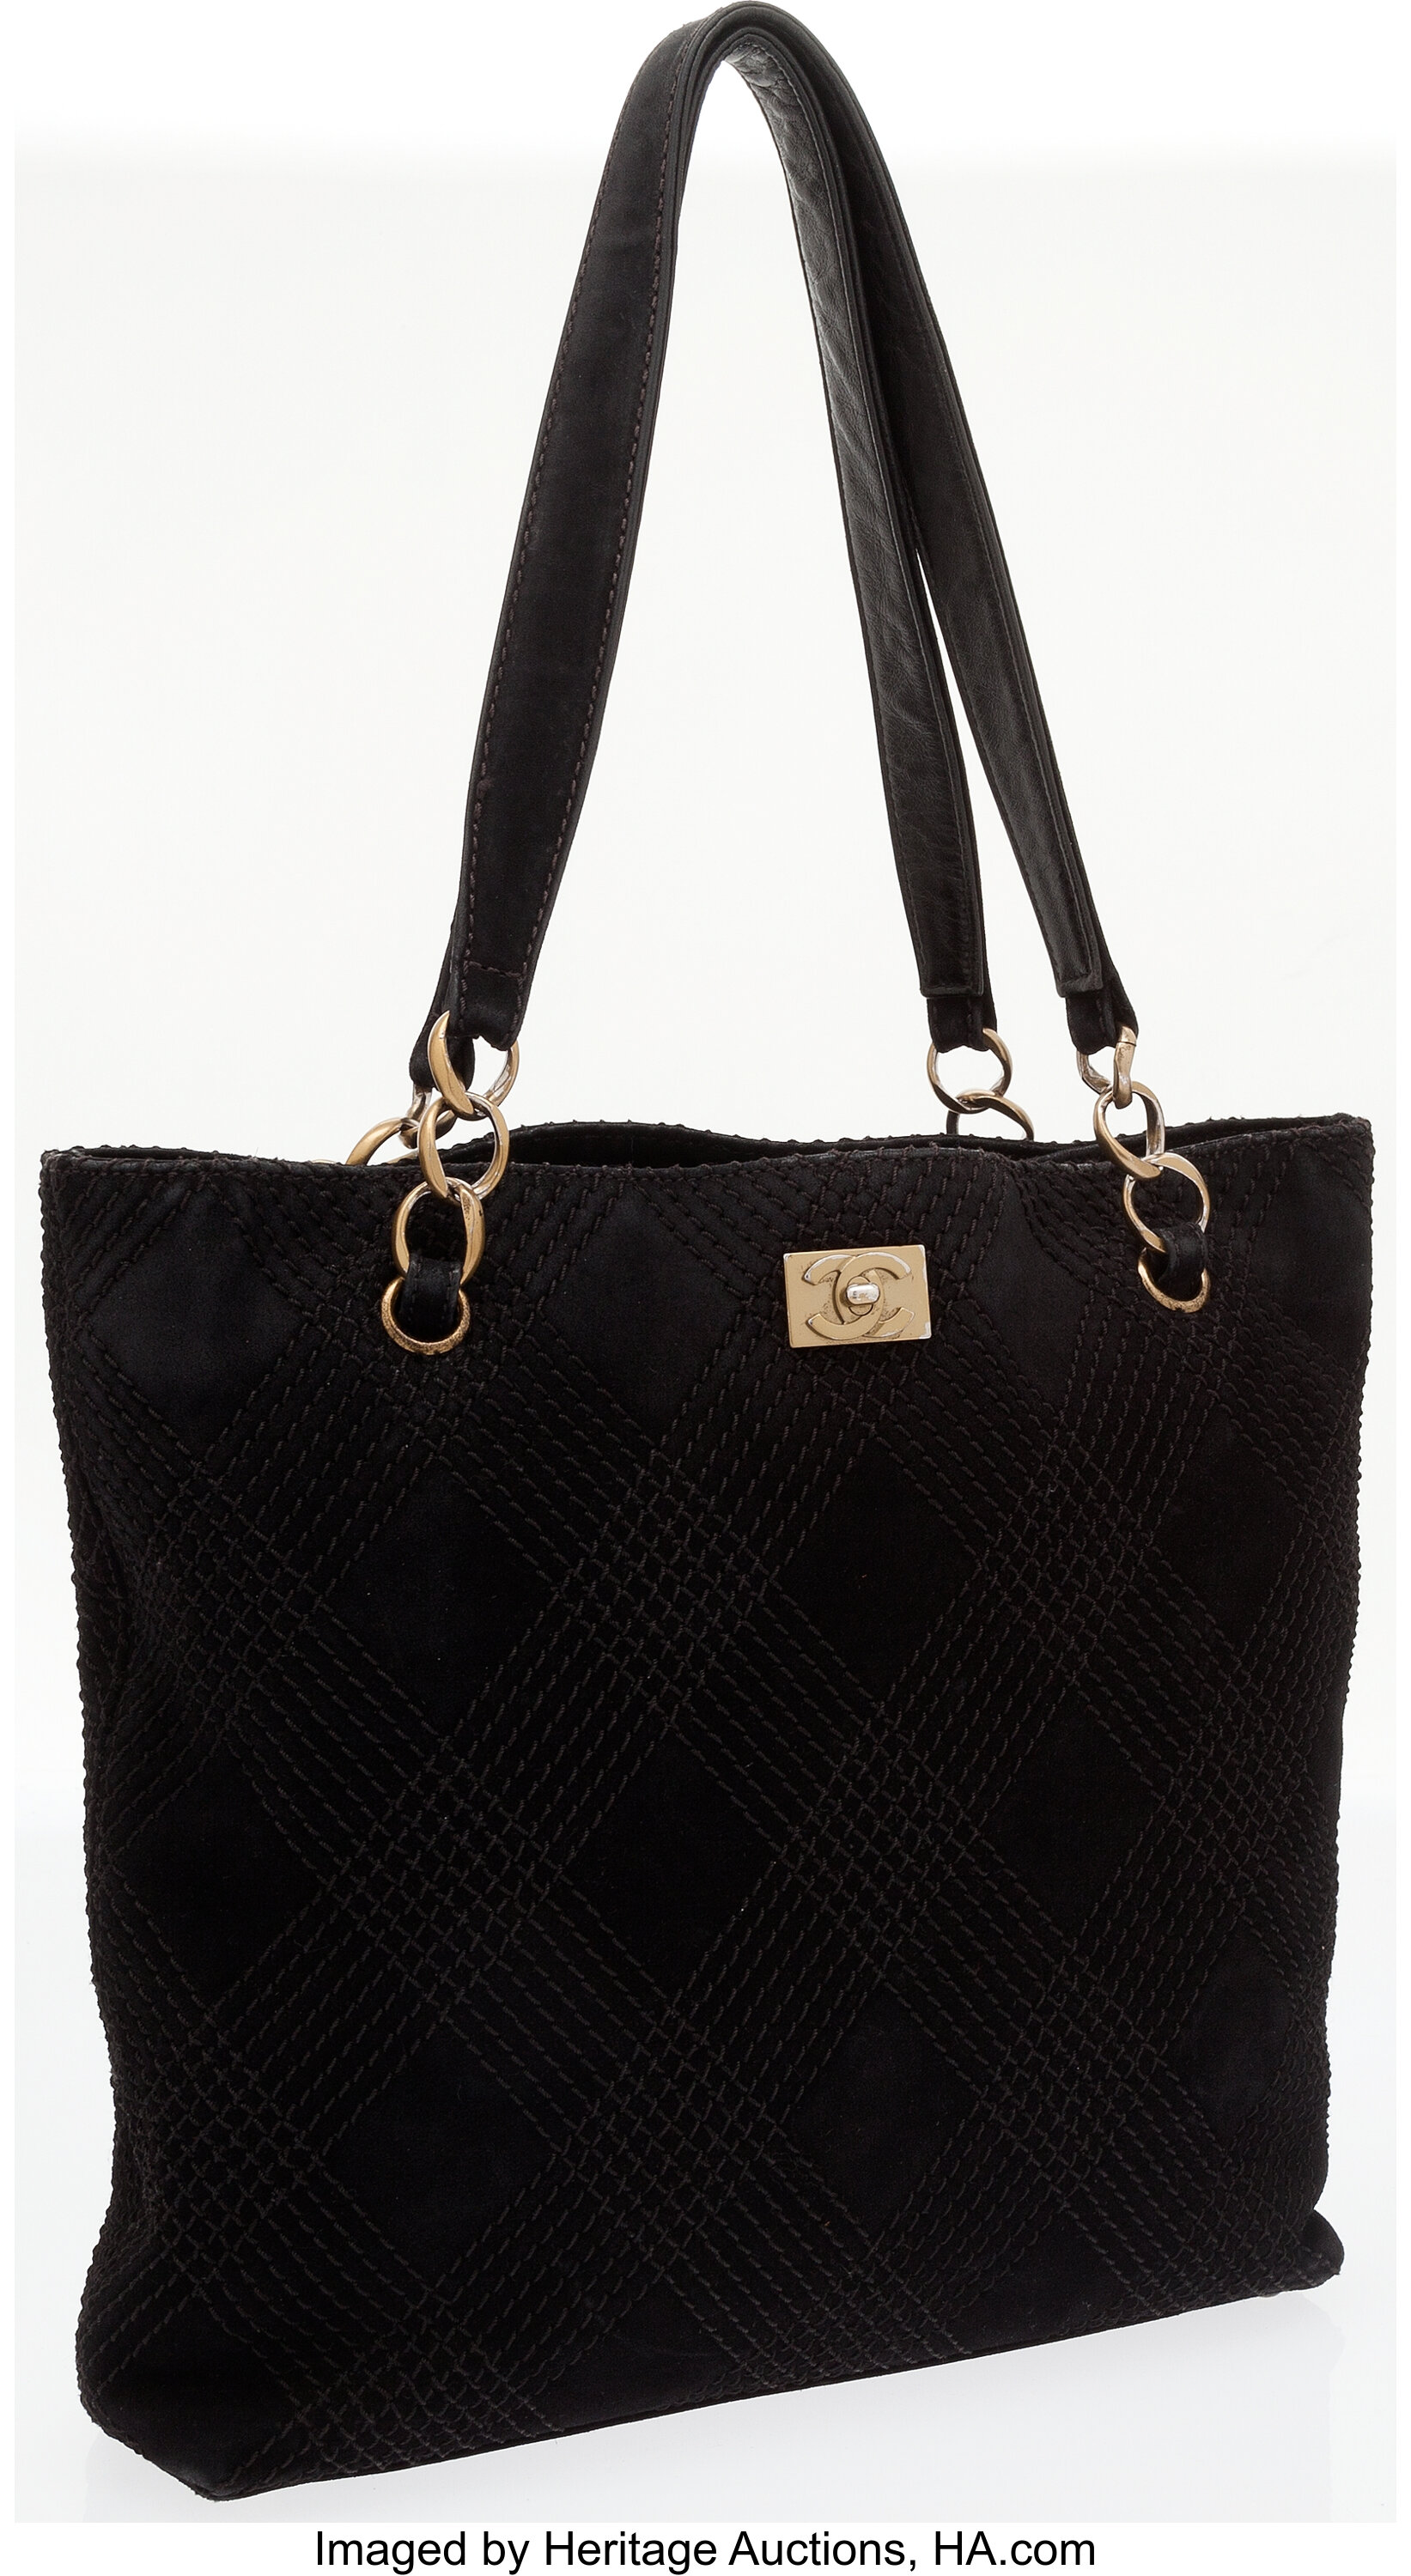 Chanel Suede Bijoux Camera Bag - Black Shoulder Bags, Handbags - CHA942502